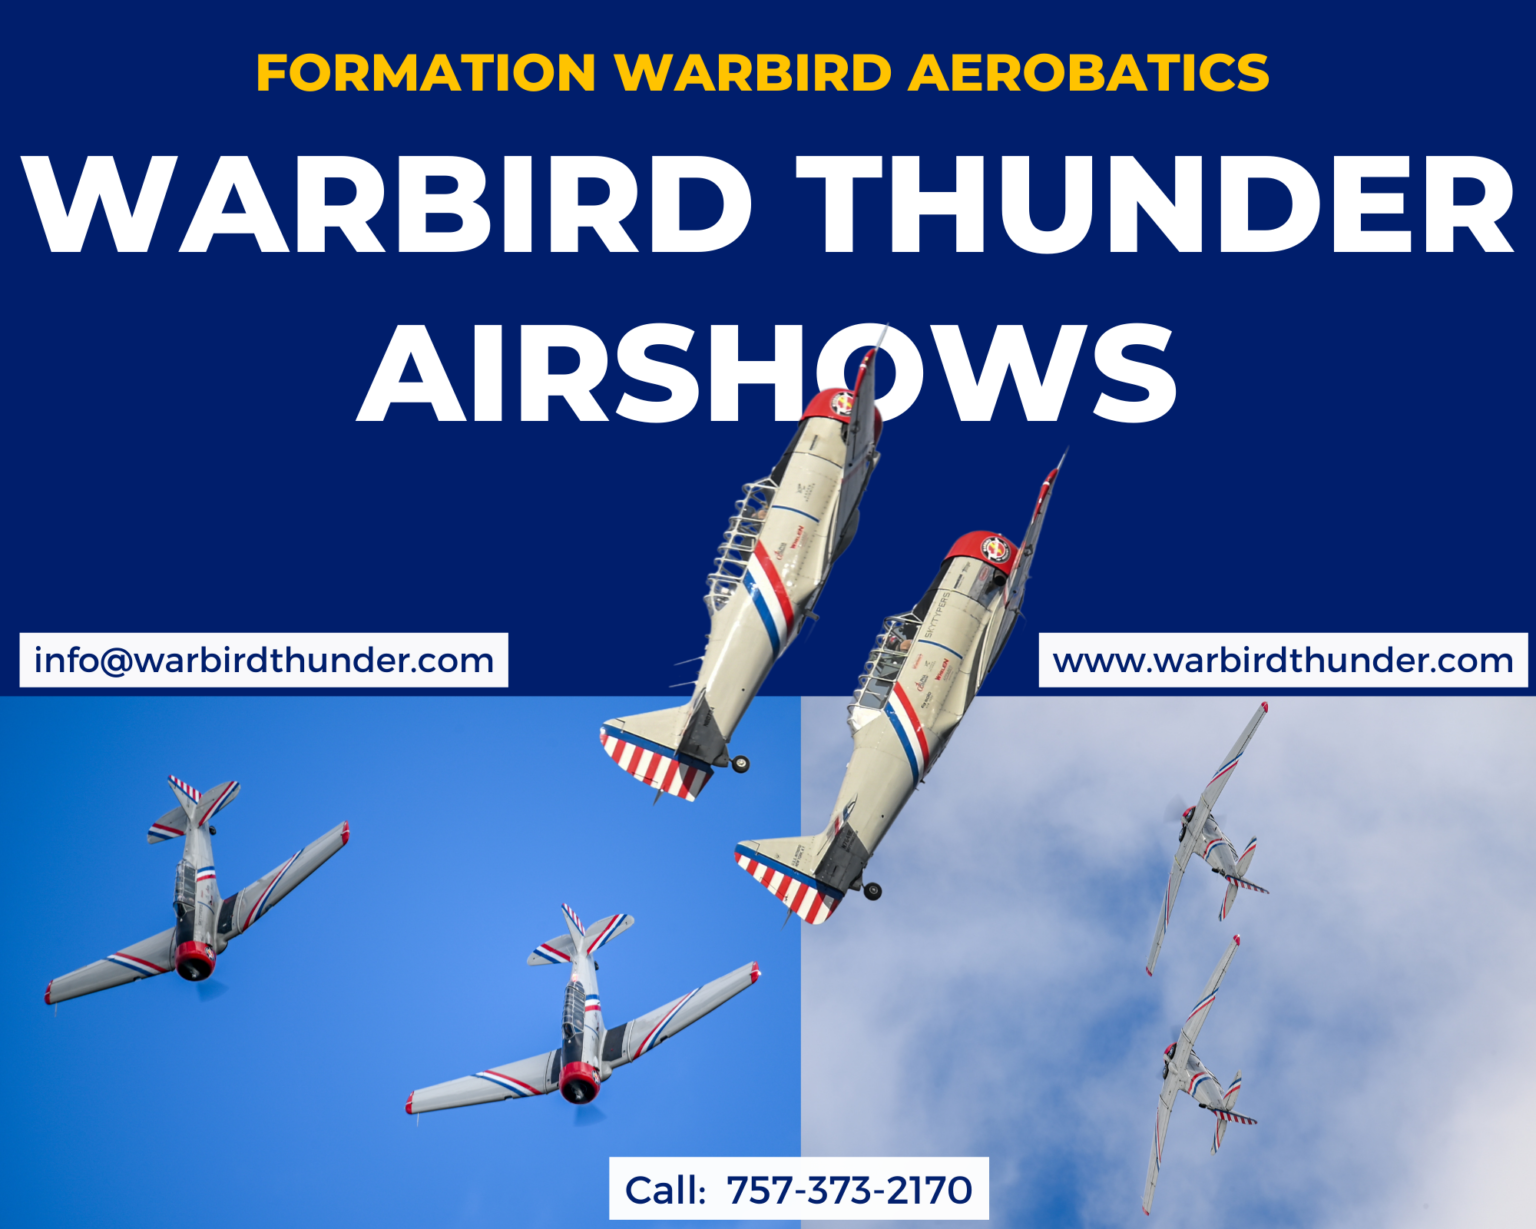 Contact Warbird Thunder Airshows